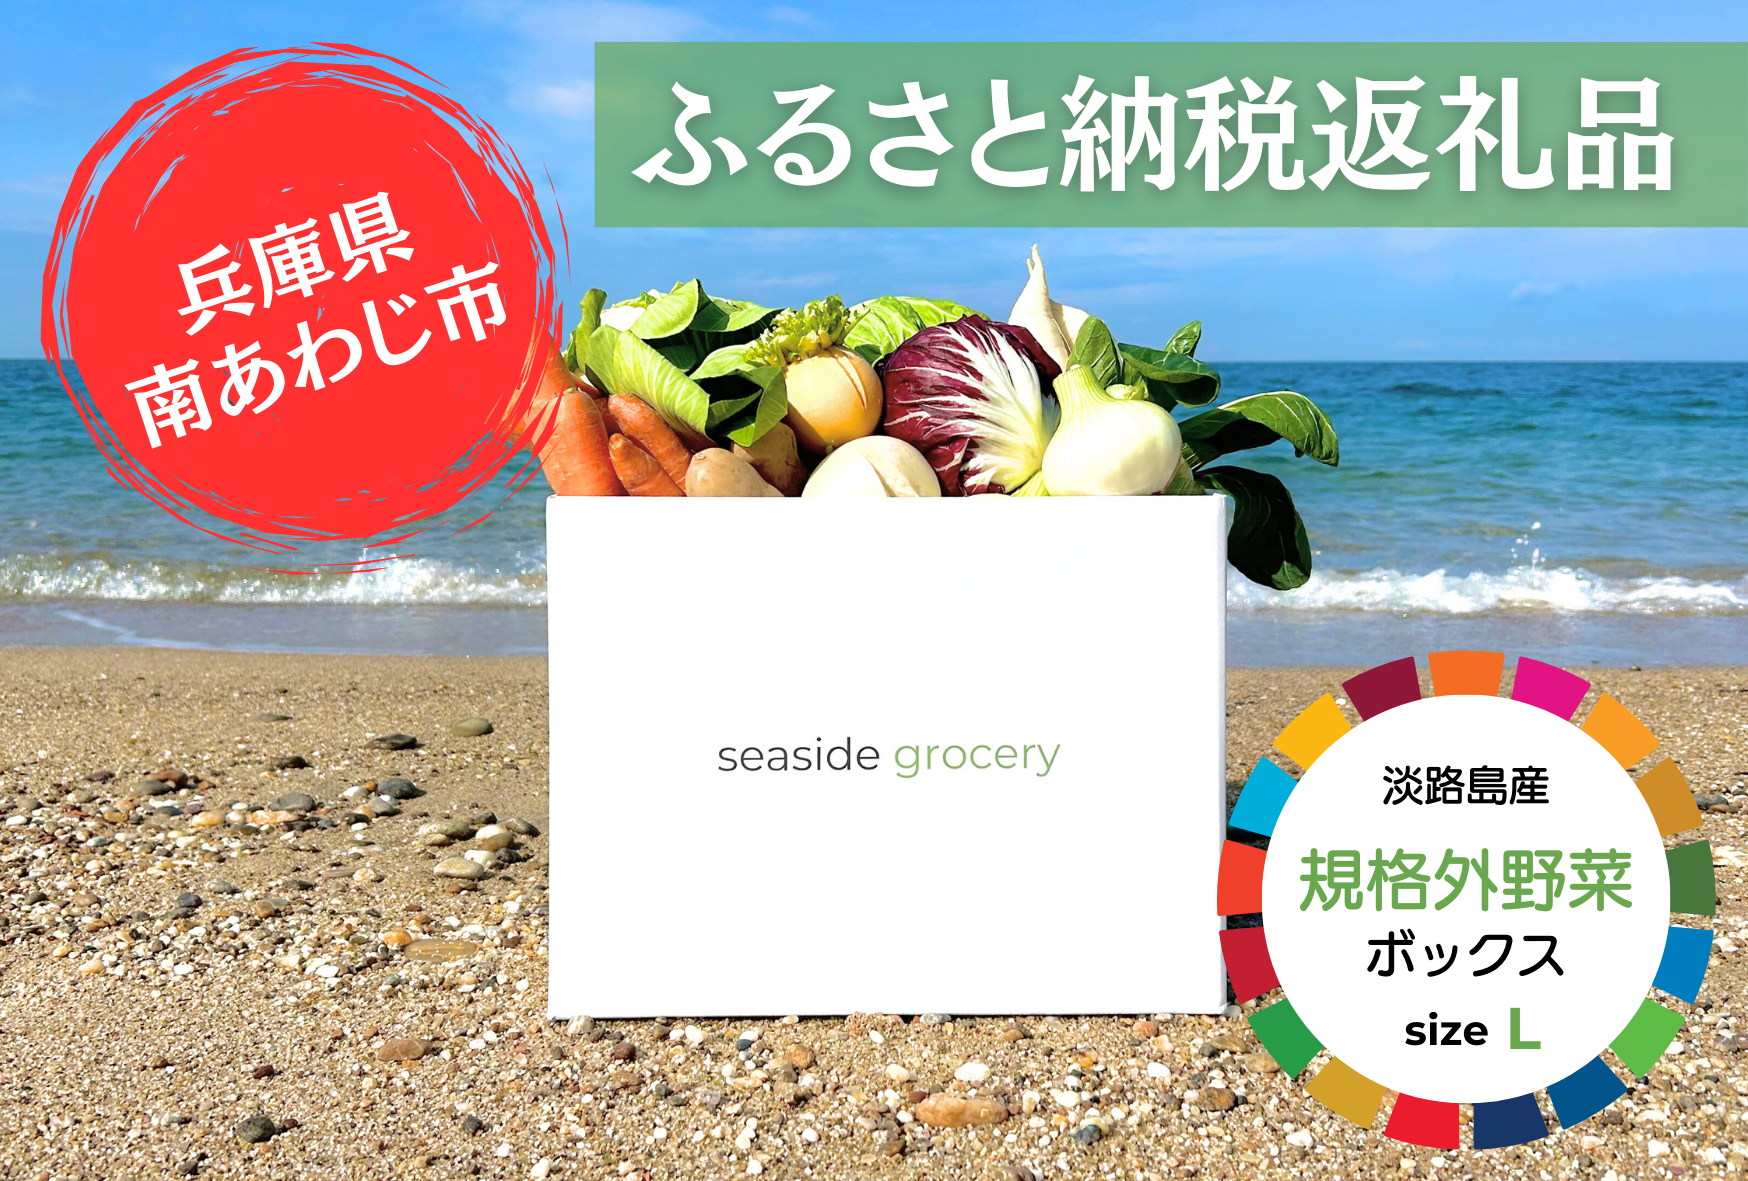 ふるさと納税 規格外野菜ボックスLサイズ - seaside grocery（シーサイドグロサリー）